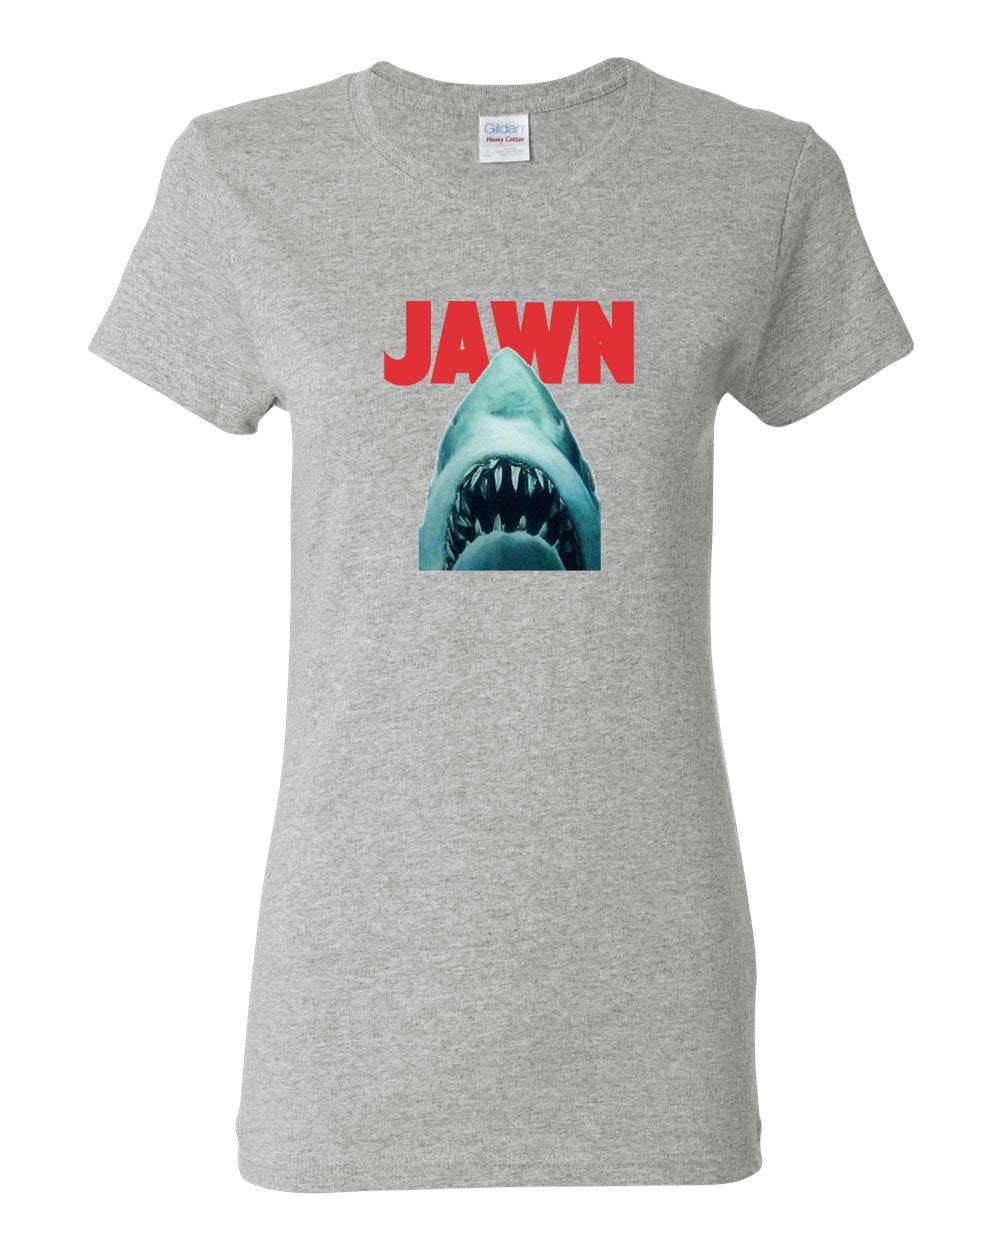 Jaws Jawn LADIES Missy-Fit T-Shirt